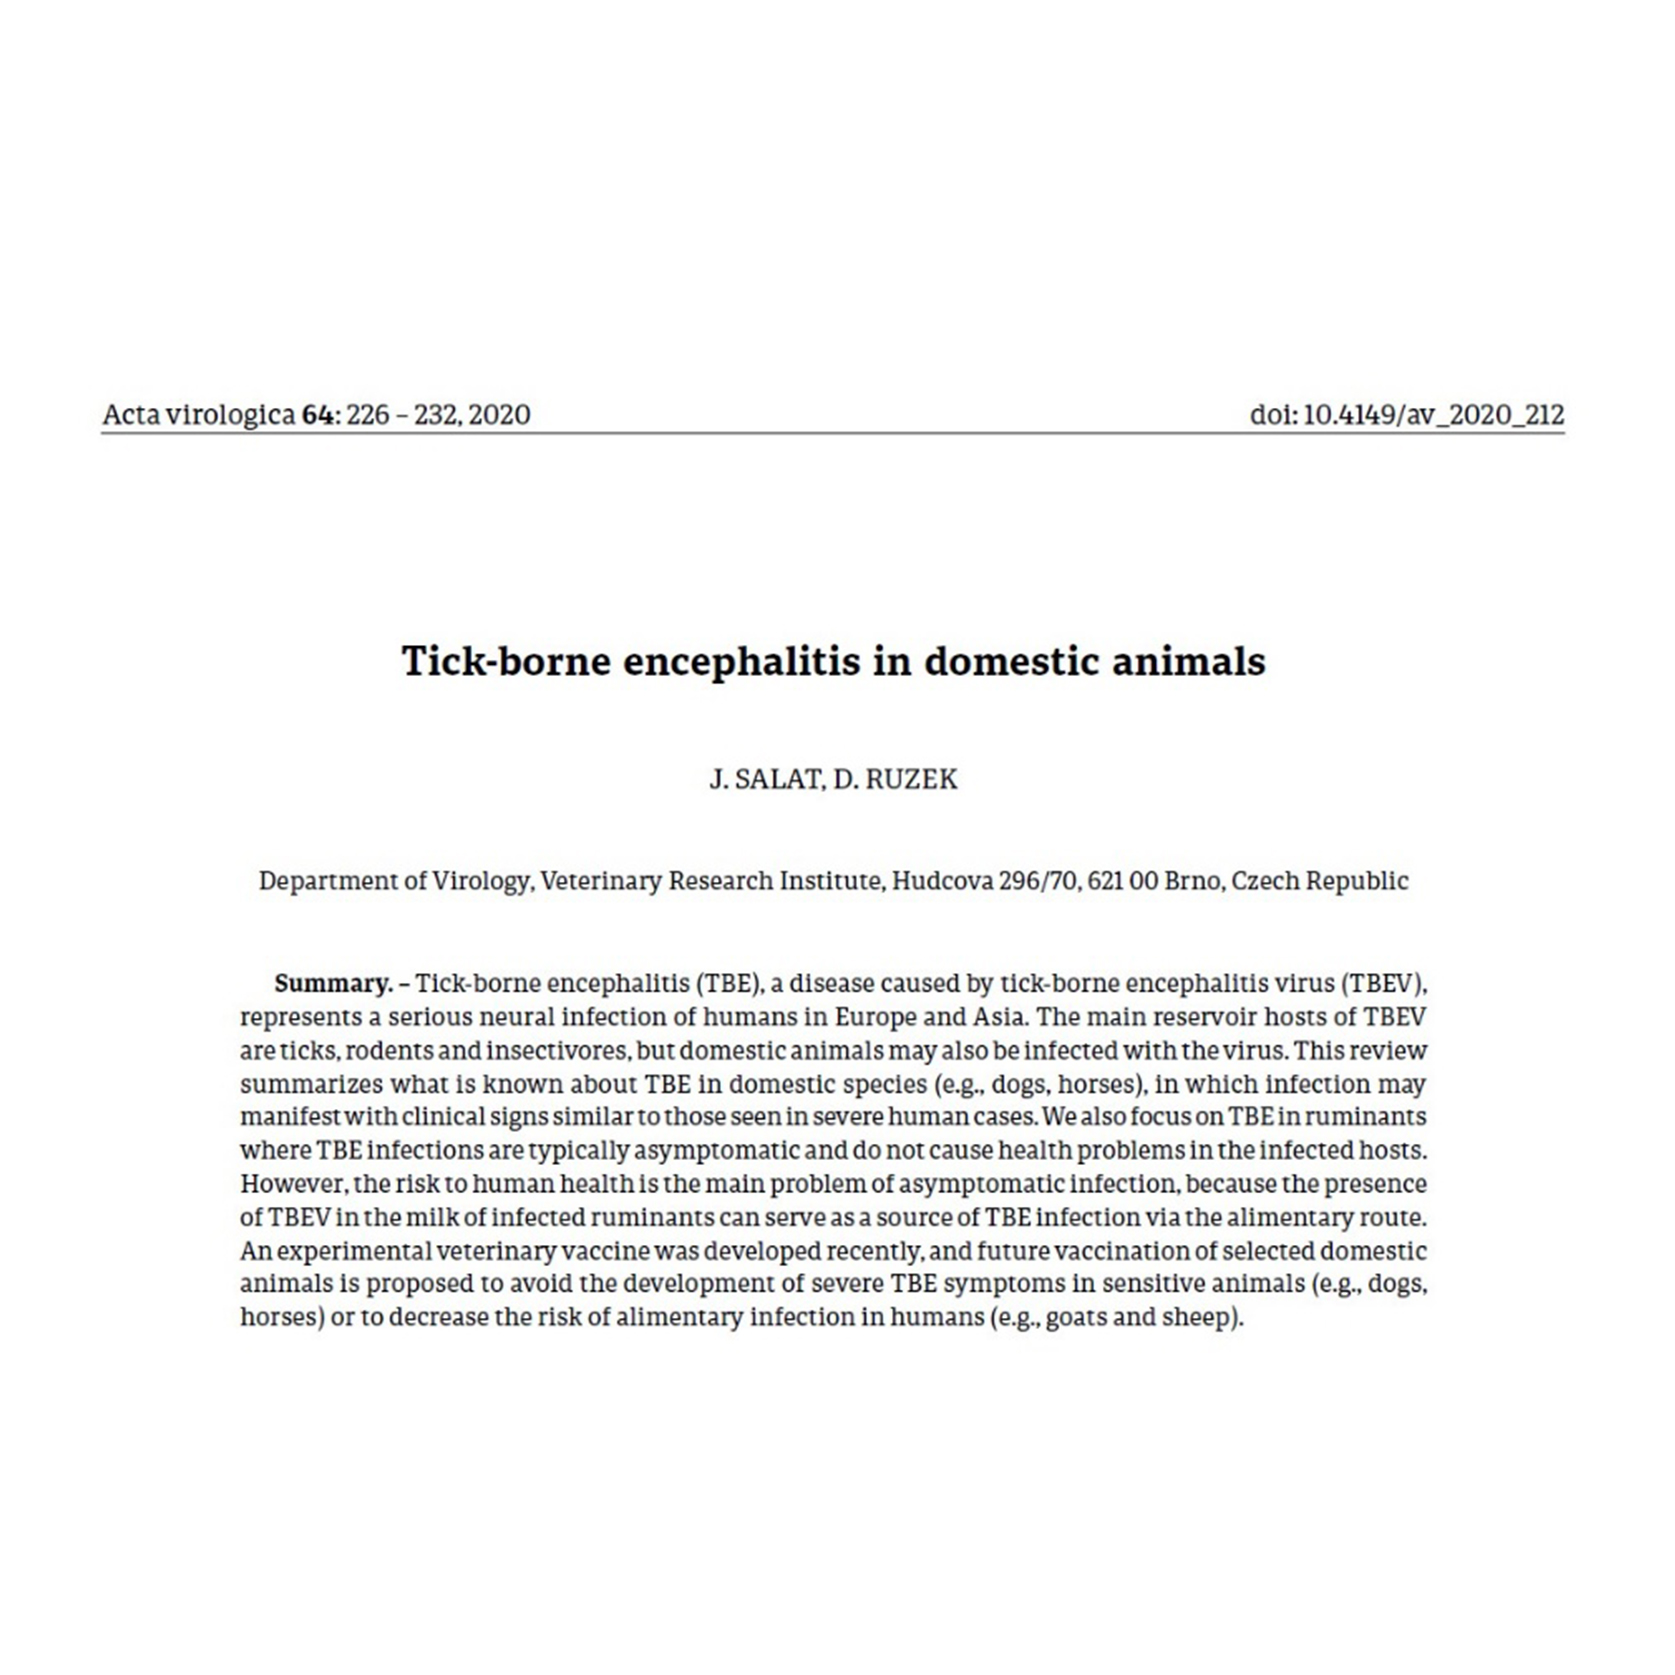 Náhled článku s abstraktem: Salát  J., Růžek D. (2020) Tick-borne encephalitis in domestic animals (Klíšťová encefalitida u domestikovaných zvířat). Acta Virologica 64: 226-232.